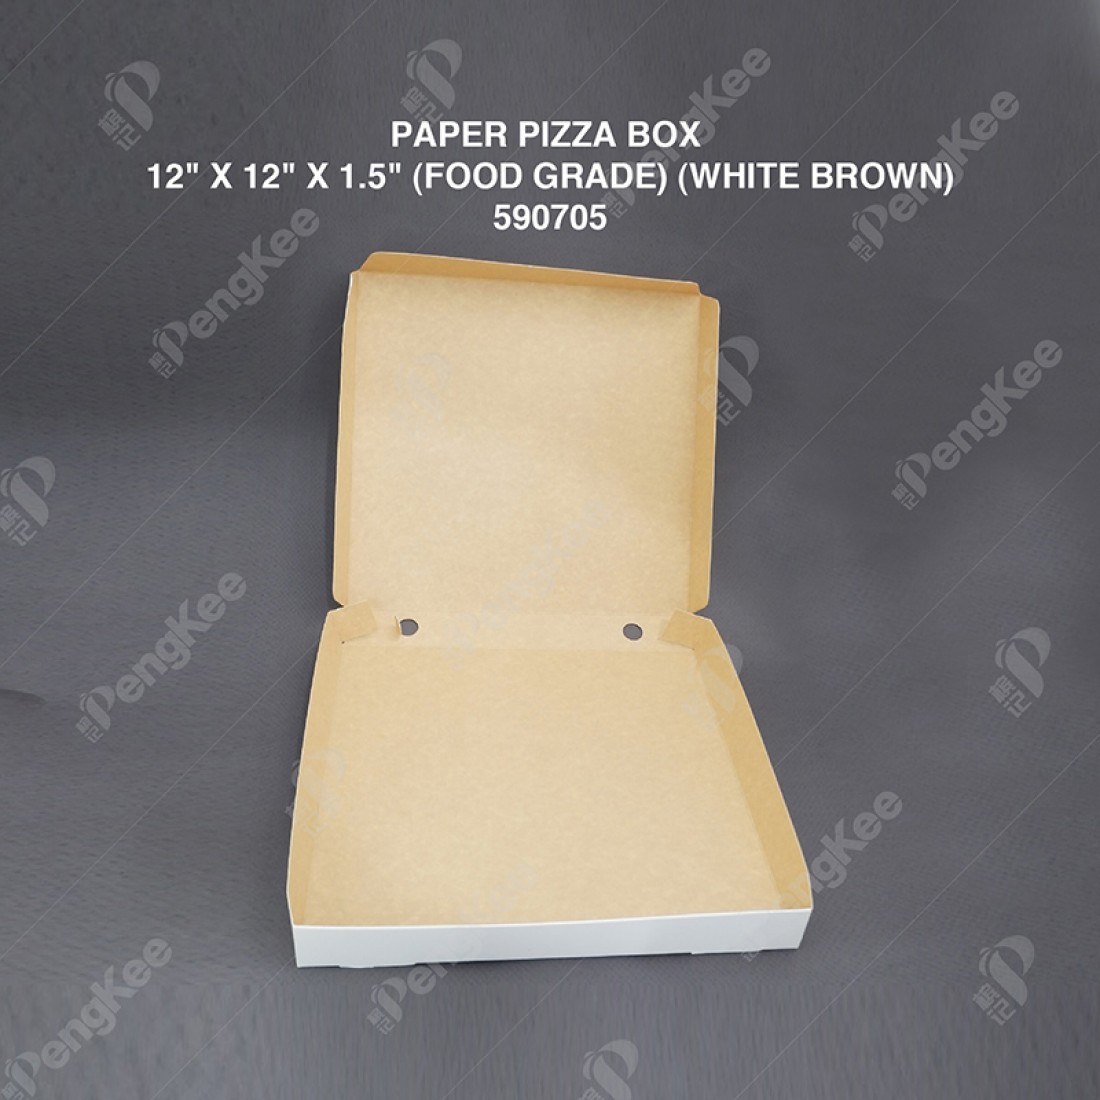 PAPER PIZZA BOX 12" X 12" X 1.5" (FOOD GRADE) (WHITE BROWN) (100'S/PKT)